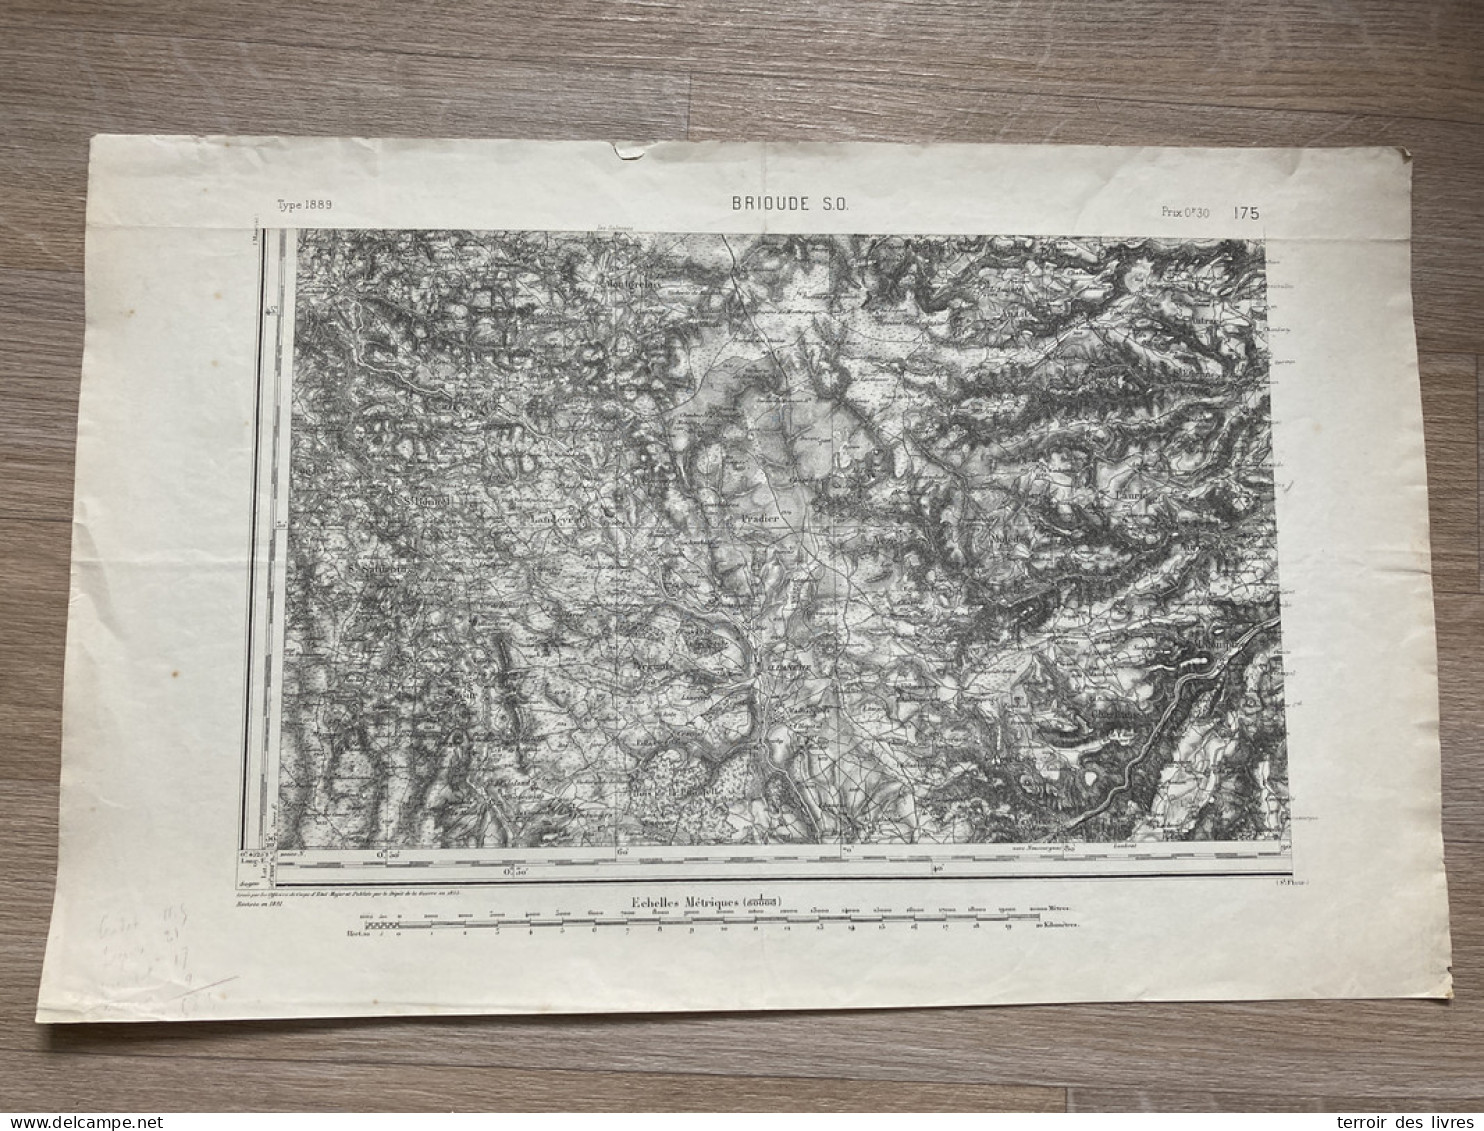 Carte état Major BRIOUDE S.O. 1855 1891 35x54cm PRADIER LANDEYRAT ALLANCHE VEZE VERNOLS MARCENAT MOLEDES MONTGRELEIX SEG - Cartes Géographiques